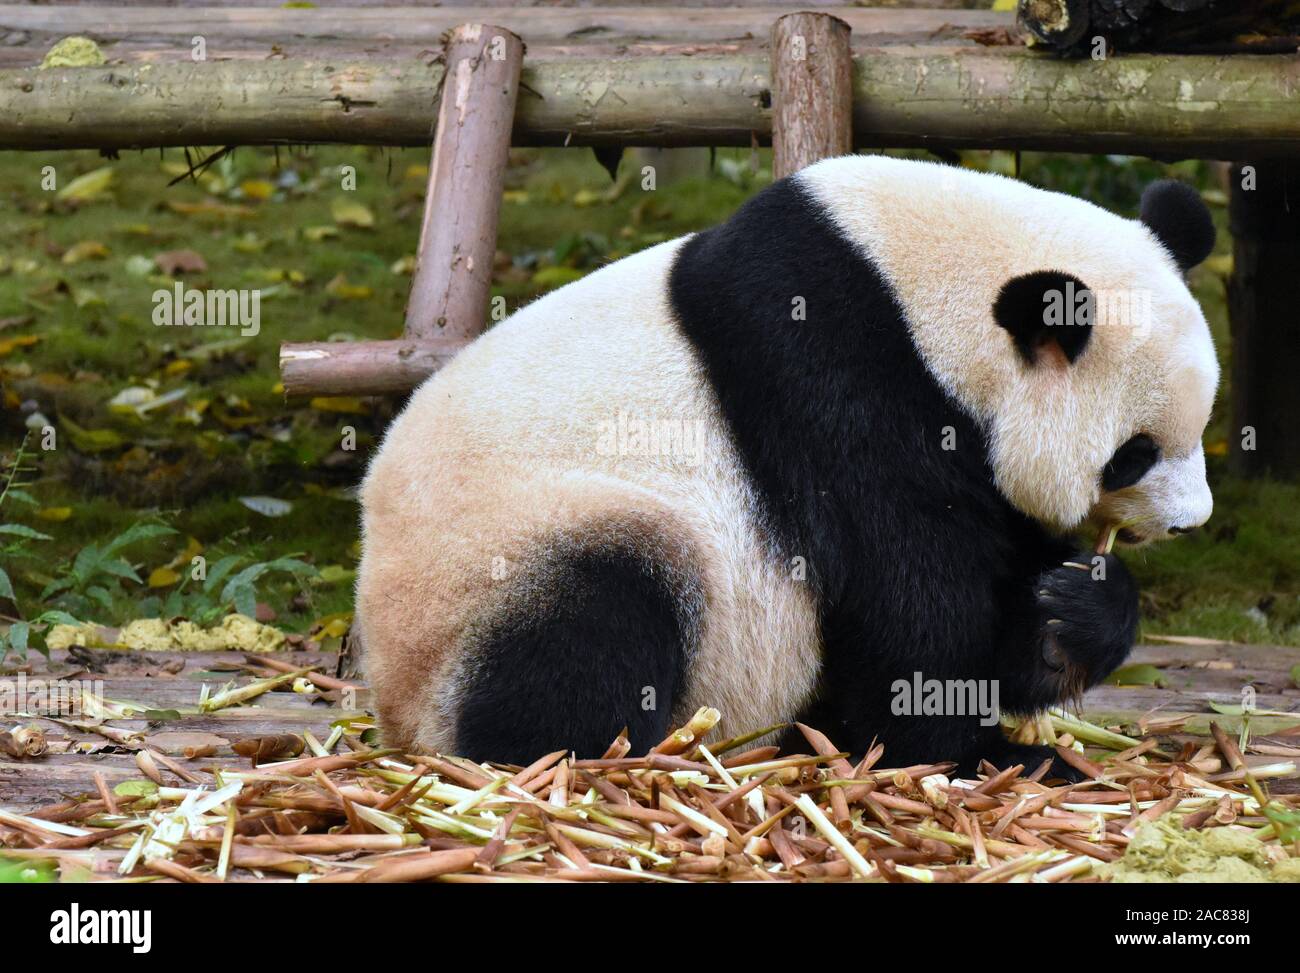 Panda manger des pousses de bambou Banque D'Images